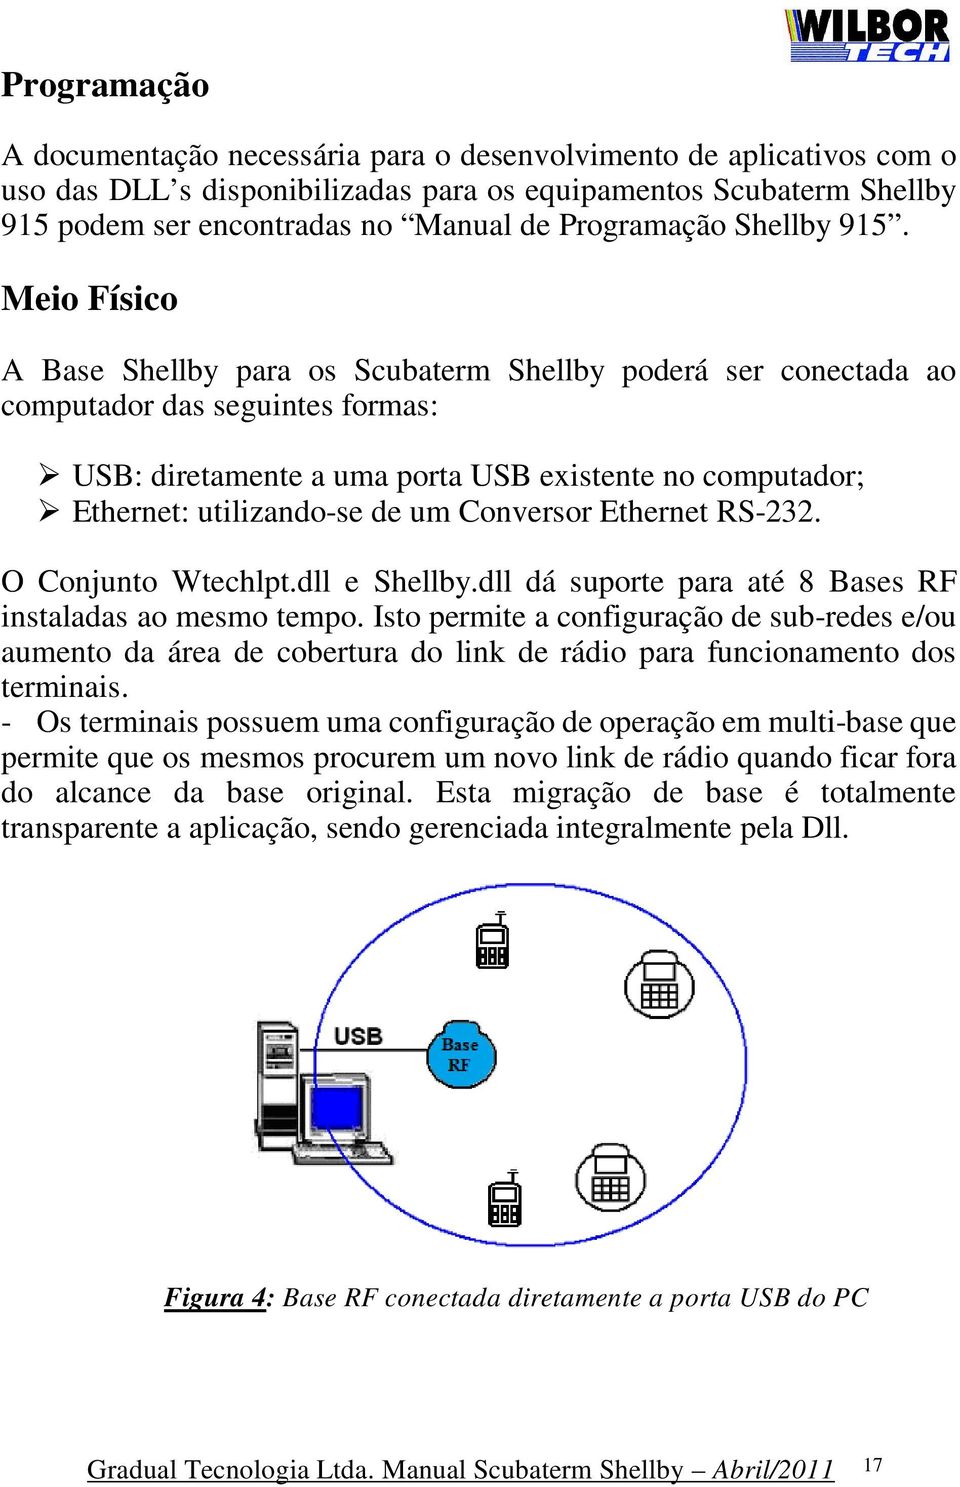 Meio Físico A Base Shellby para os Scubaterm Shellby poderá ser conectada ao computador das seguintes formas: USB: diretamente a uma porta USB existente no computador; Ethernet: utilizando-se de um